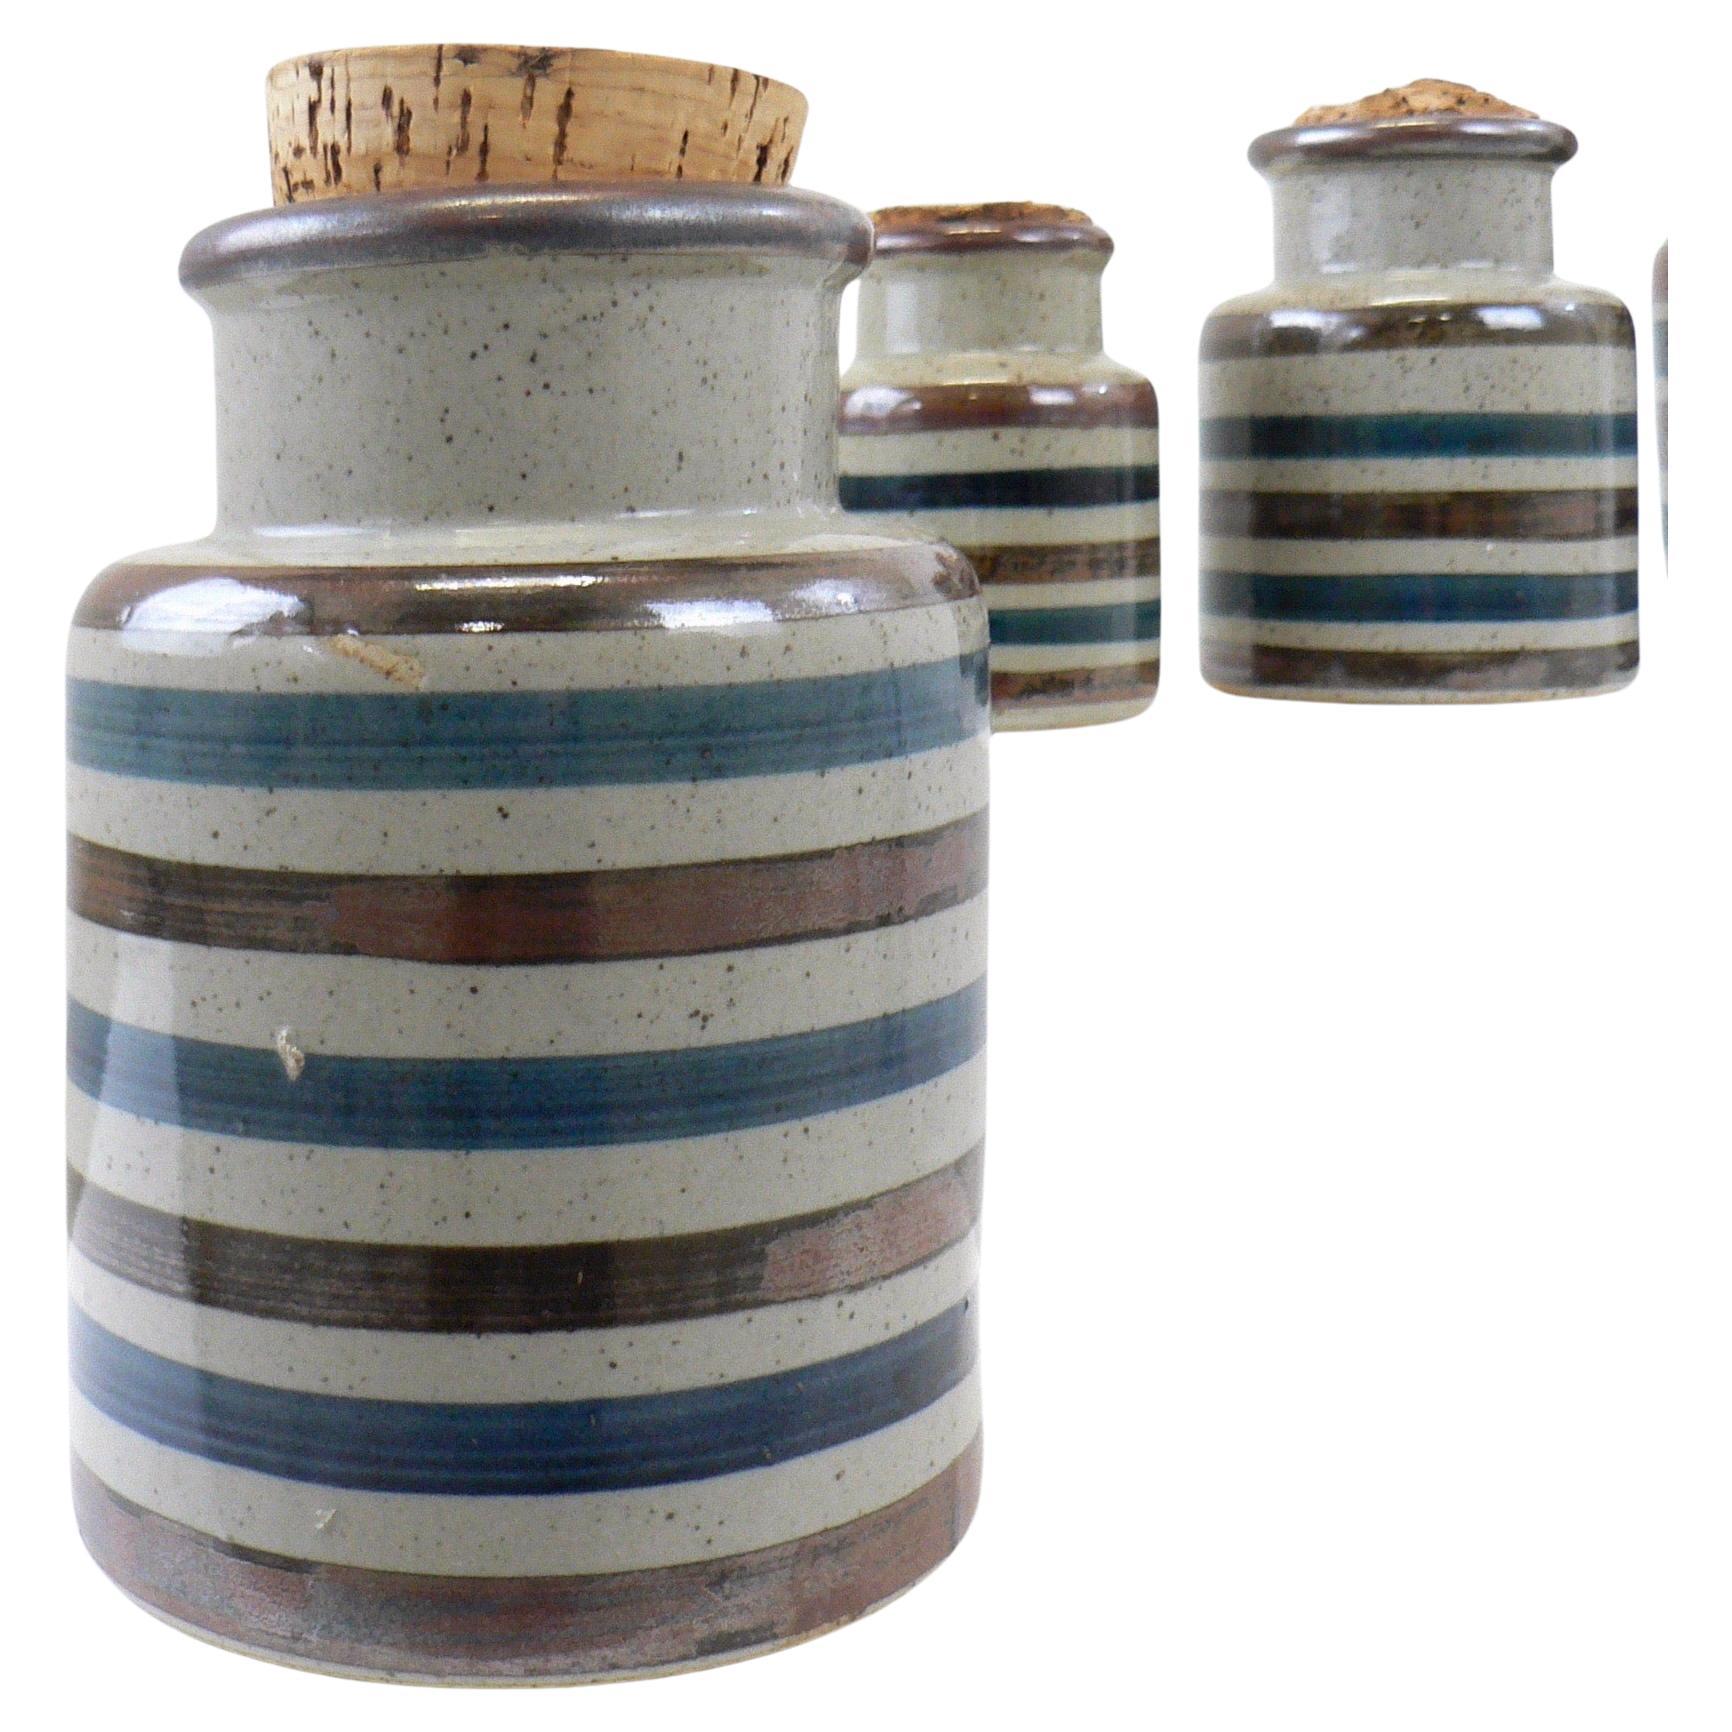 Un ensemble scandinave de quatre pots à épices en porcelaine avec bouchons en liège.

Dimensions :
Hauteur : 16, 13, 11 et 9
Diamètre : 12, 11, 9 et 7